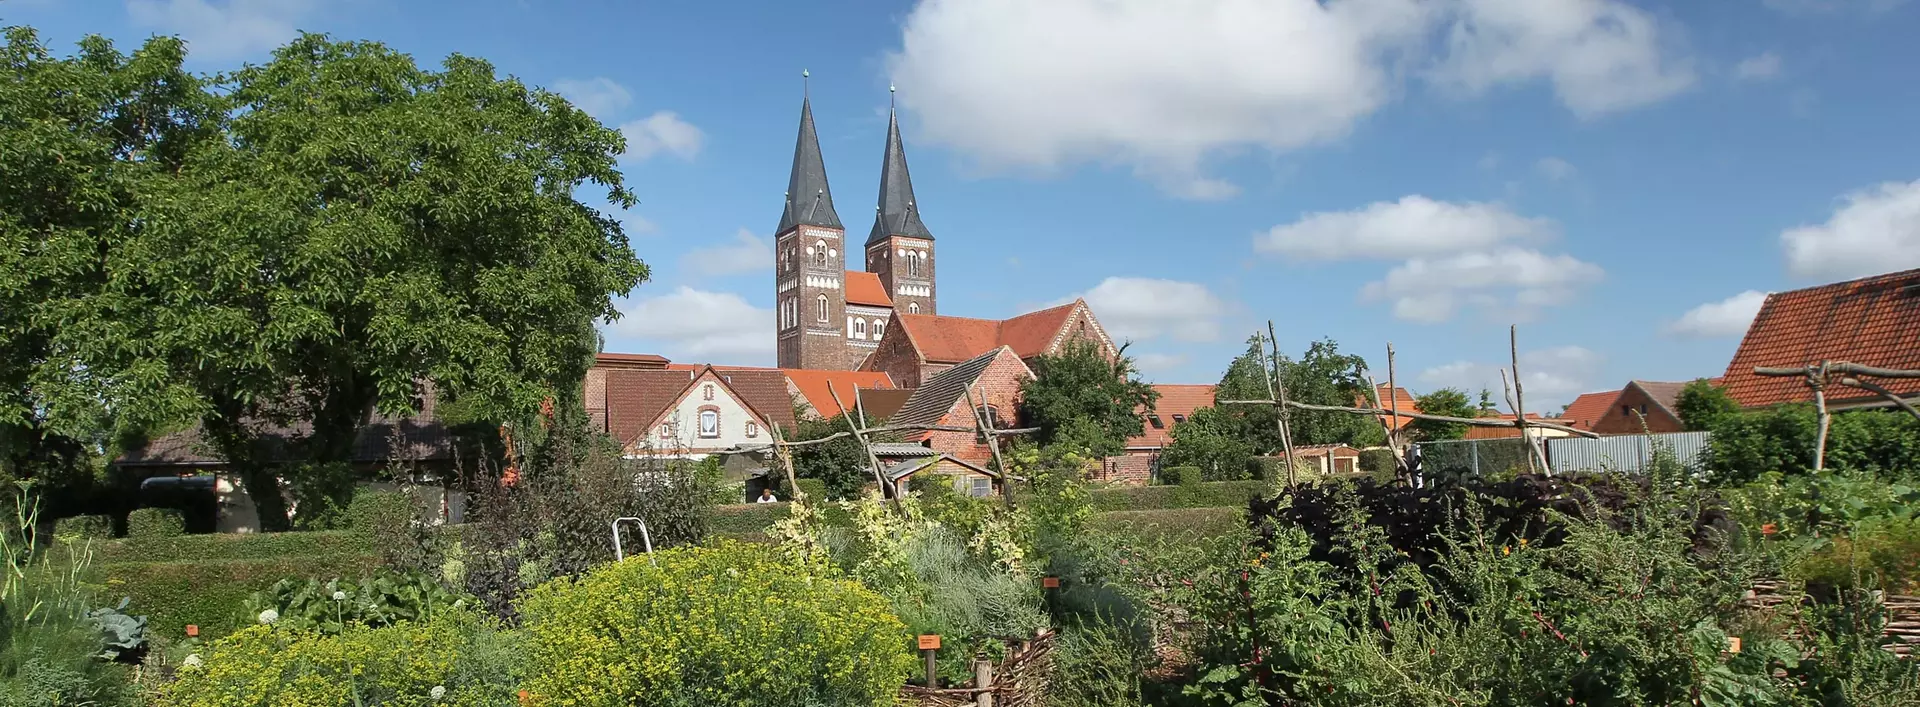 Das ehemalige Kloster Jerichow liegt bei Tangermünde in Sachsen-Anhalt und ist eine historische Klosteranlage aus dem Jahre 1144.